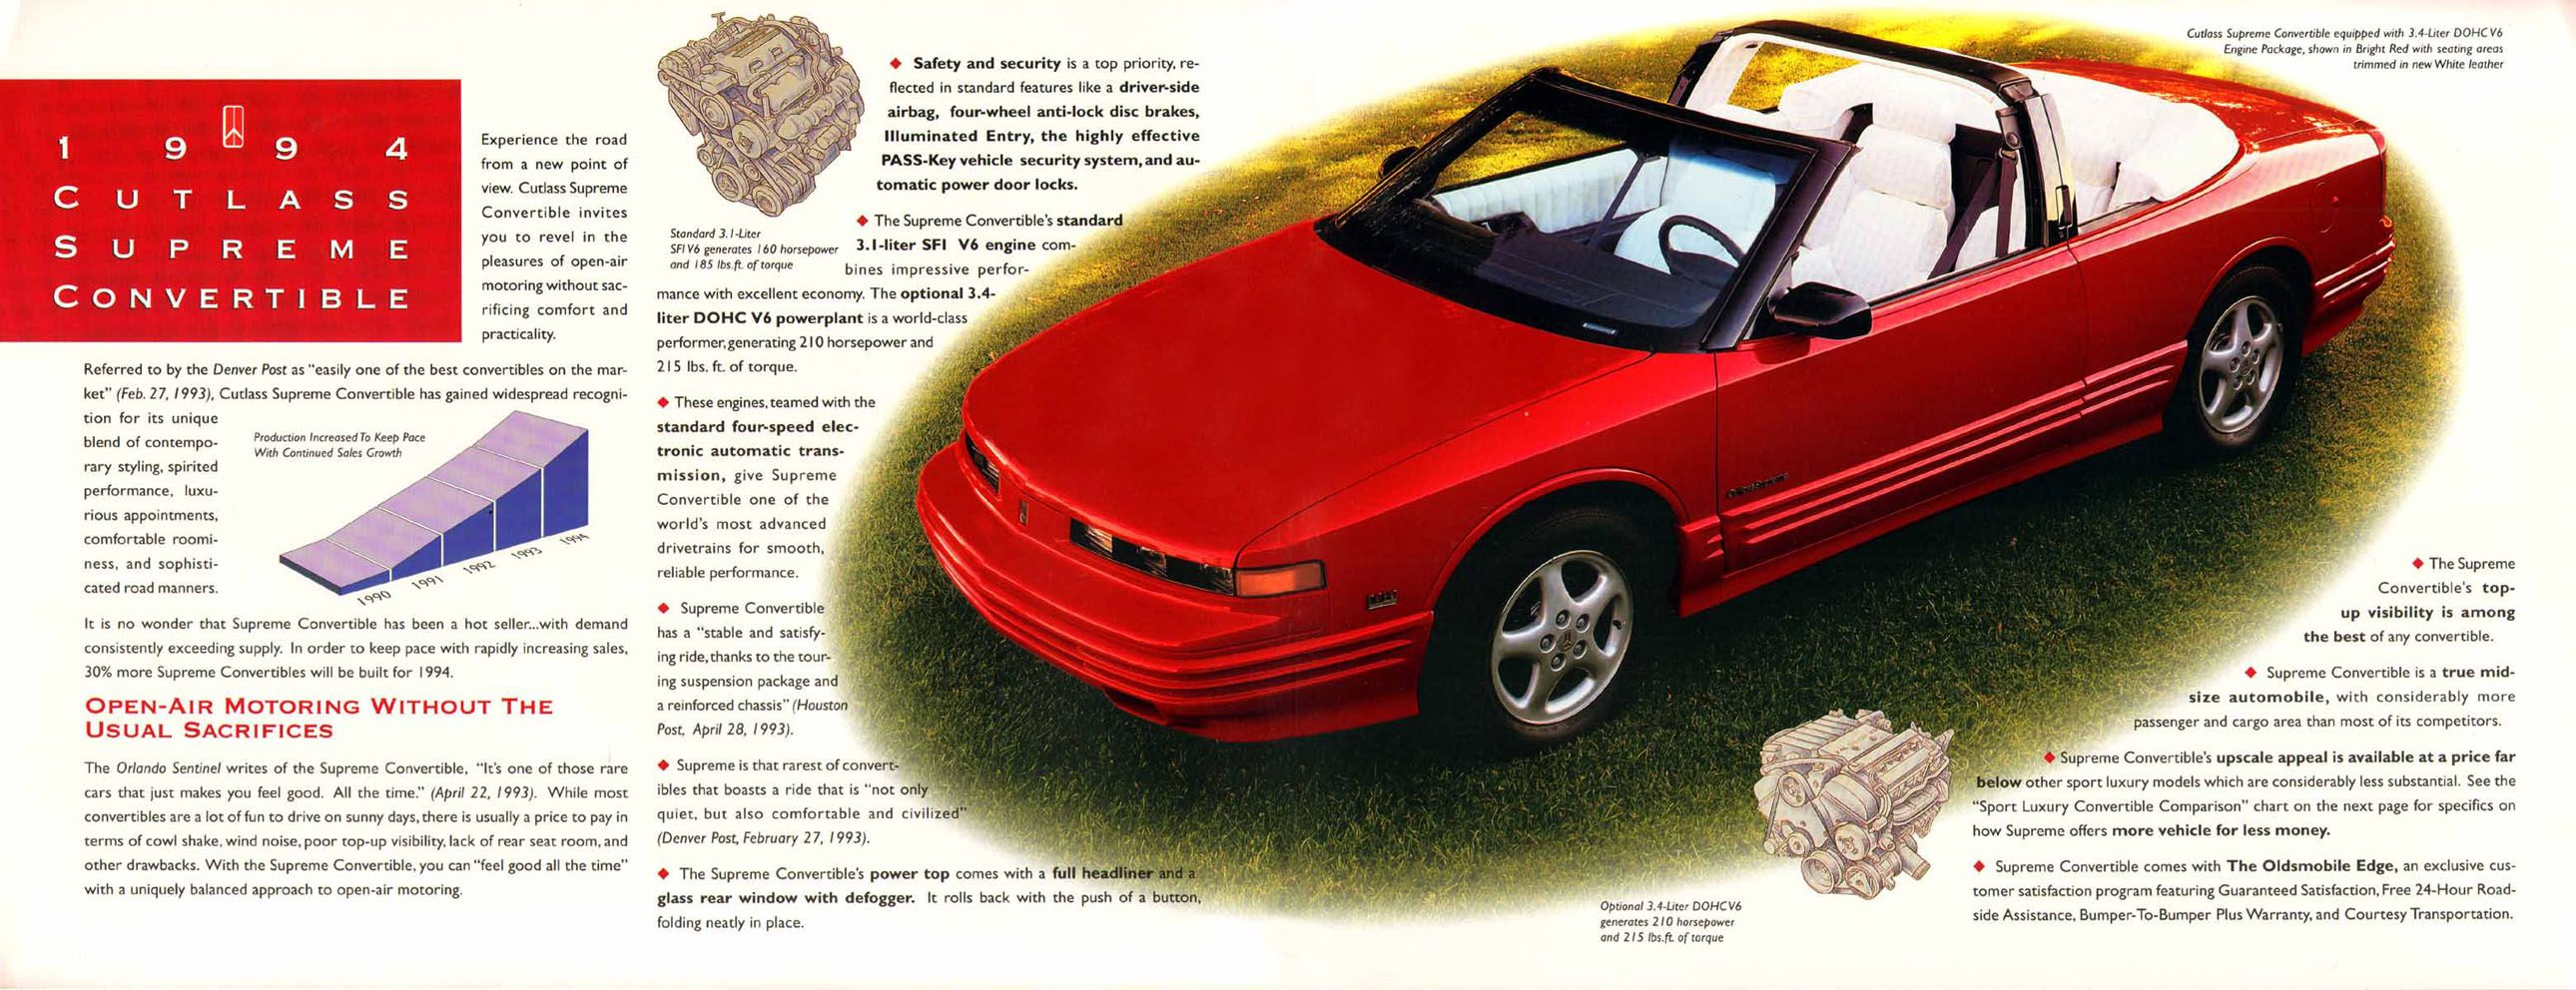 1994 Oldsmobile Cutlass Ciera Sales Brochure 